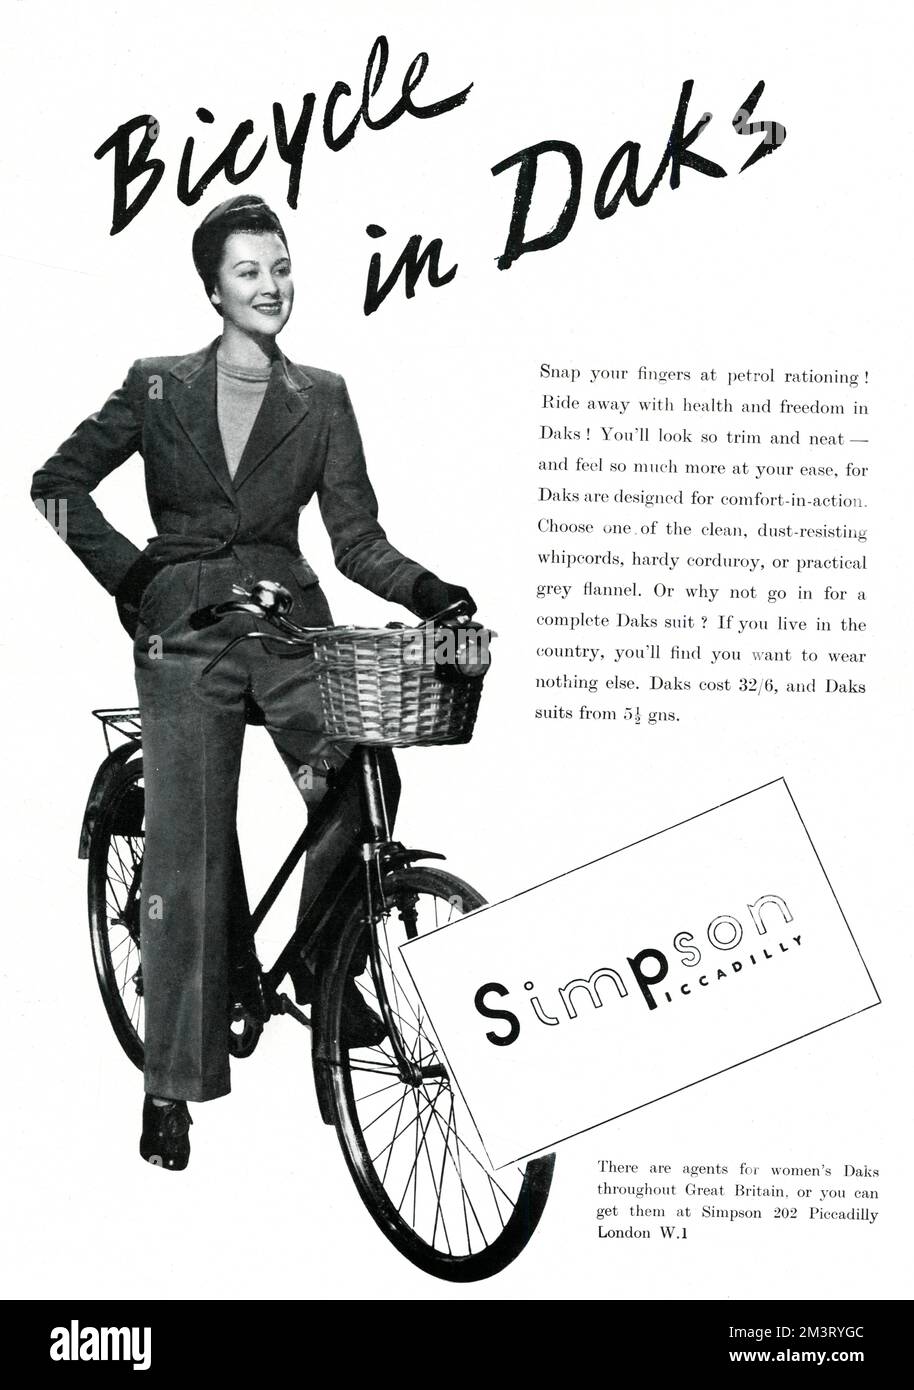 Publicité pour le costume Daks de Simpson de Piccadilly, idéal pour les vêtements de guerre en "propre, résistant à la poussière, whripcord, velours dur ou flanelle gris pratique". Date: 1940 Banque D'Images